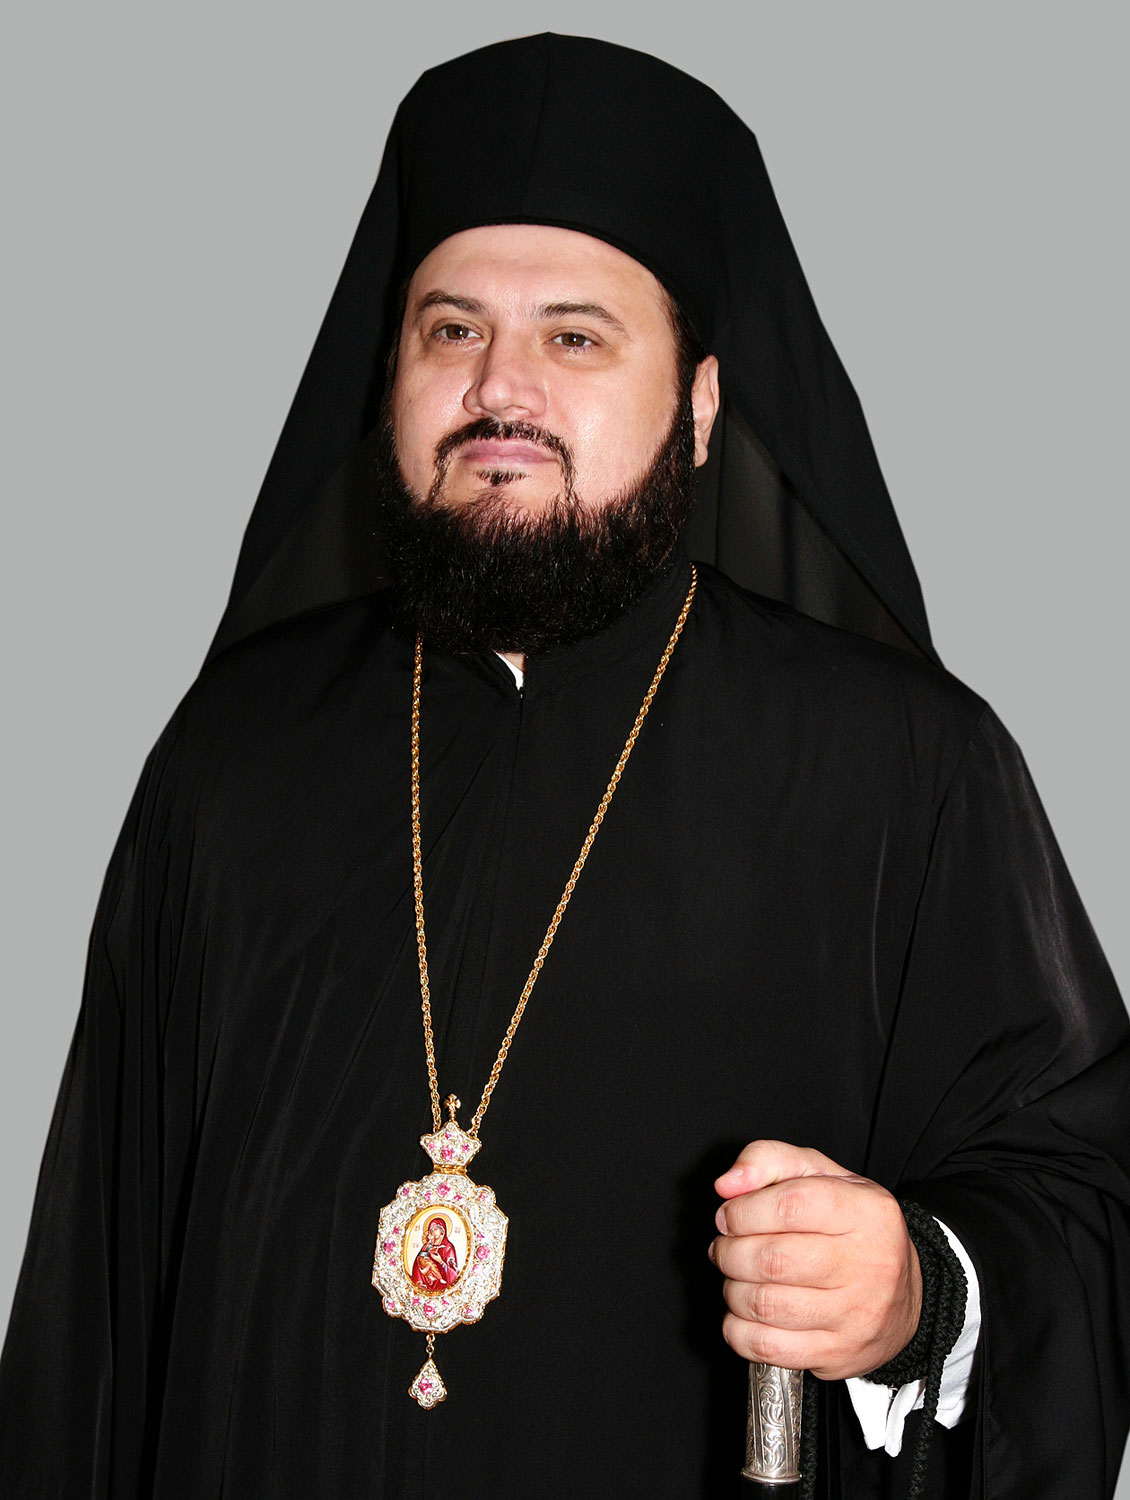 Petroniu Florea püspök